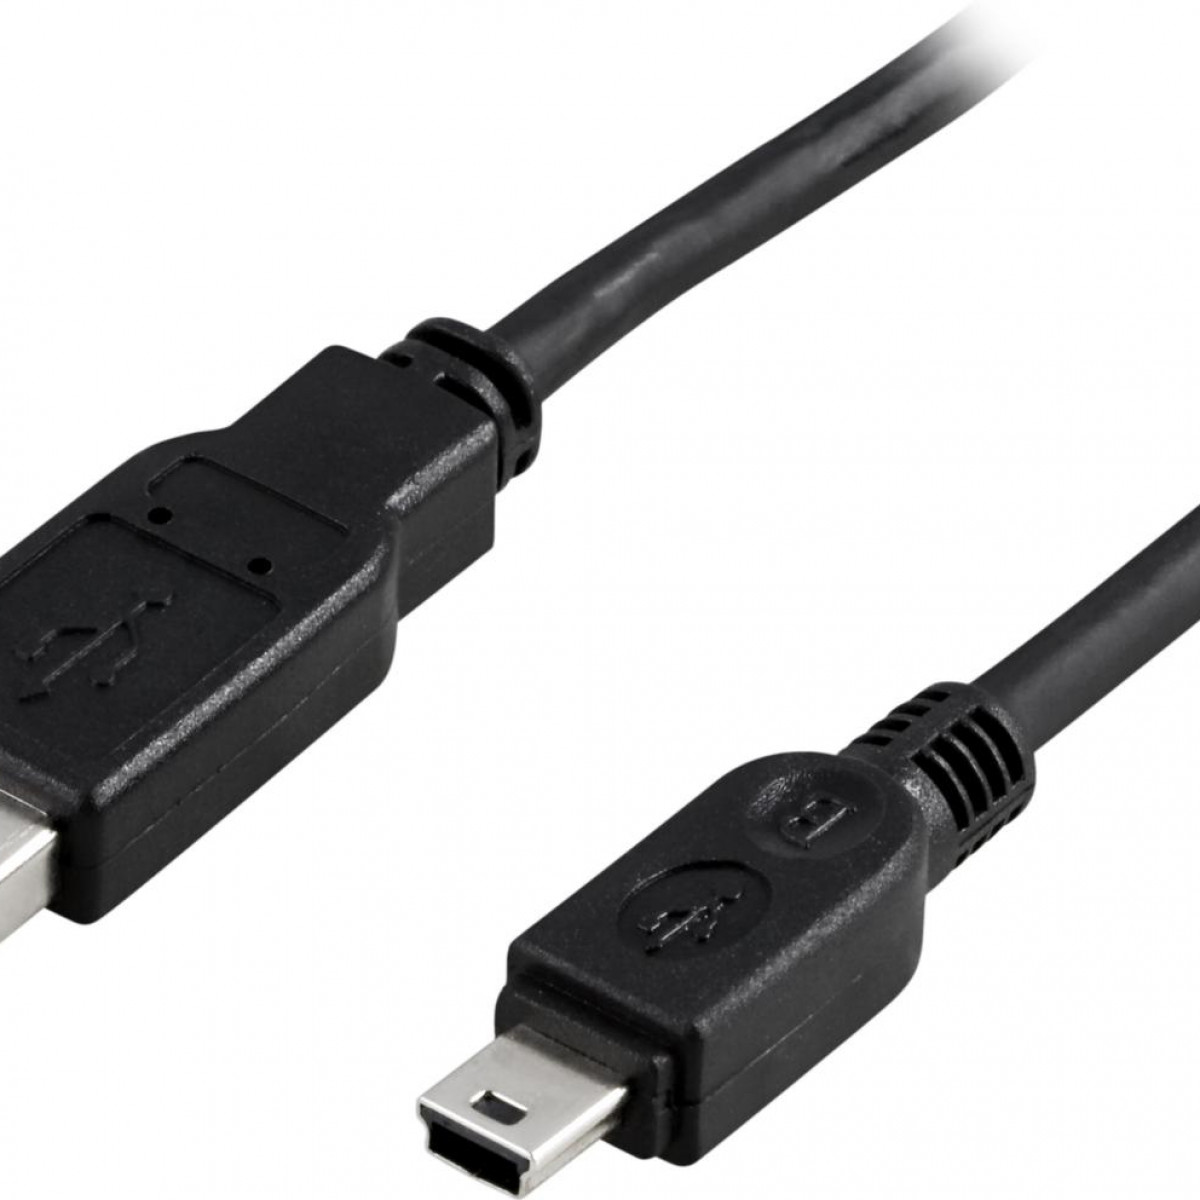 Typ Stecker USB Stecker B 2.0 Kabel 0,5m, DELTACO Mini DELTACO Kabel 2.0 schwarz A - Typ USB